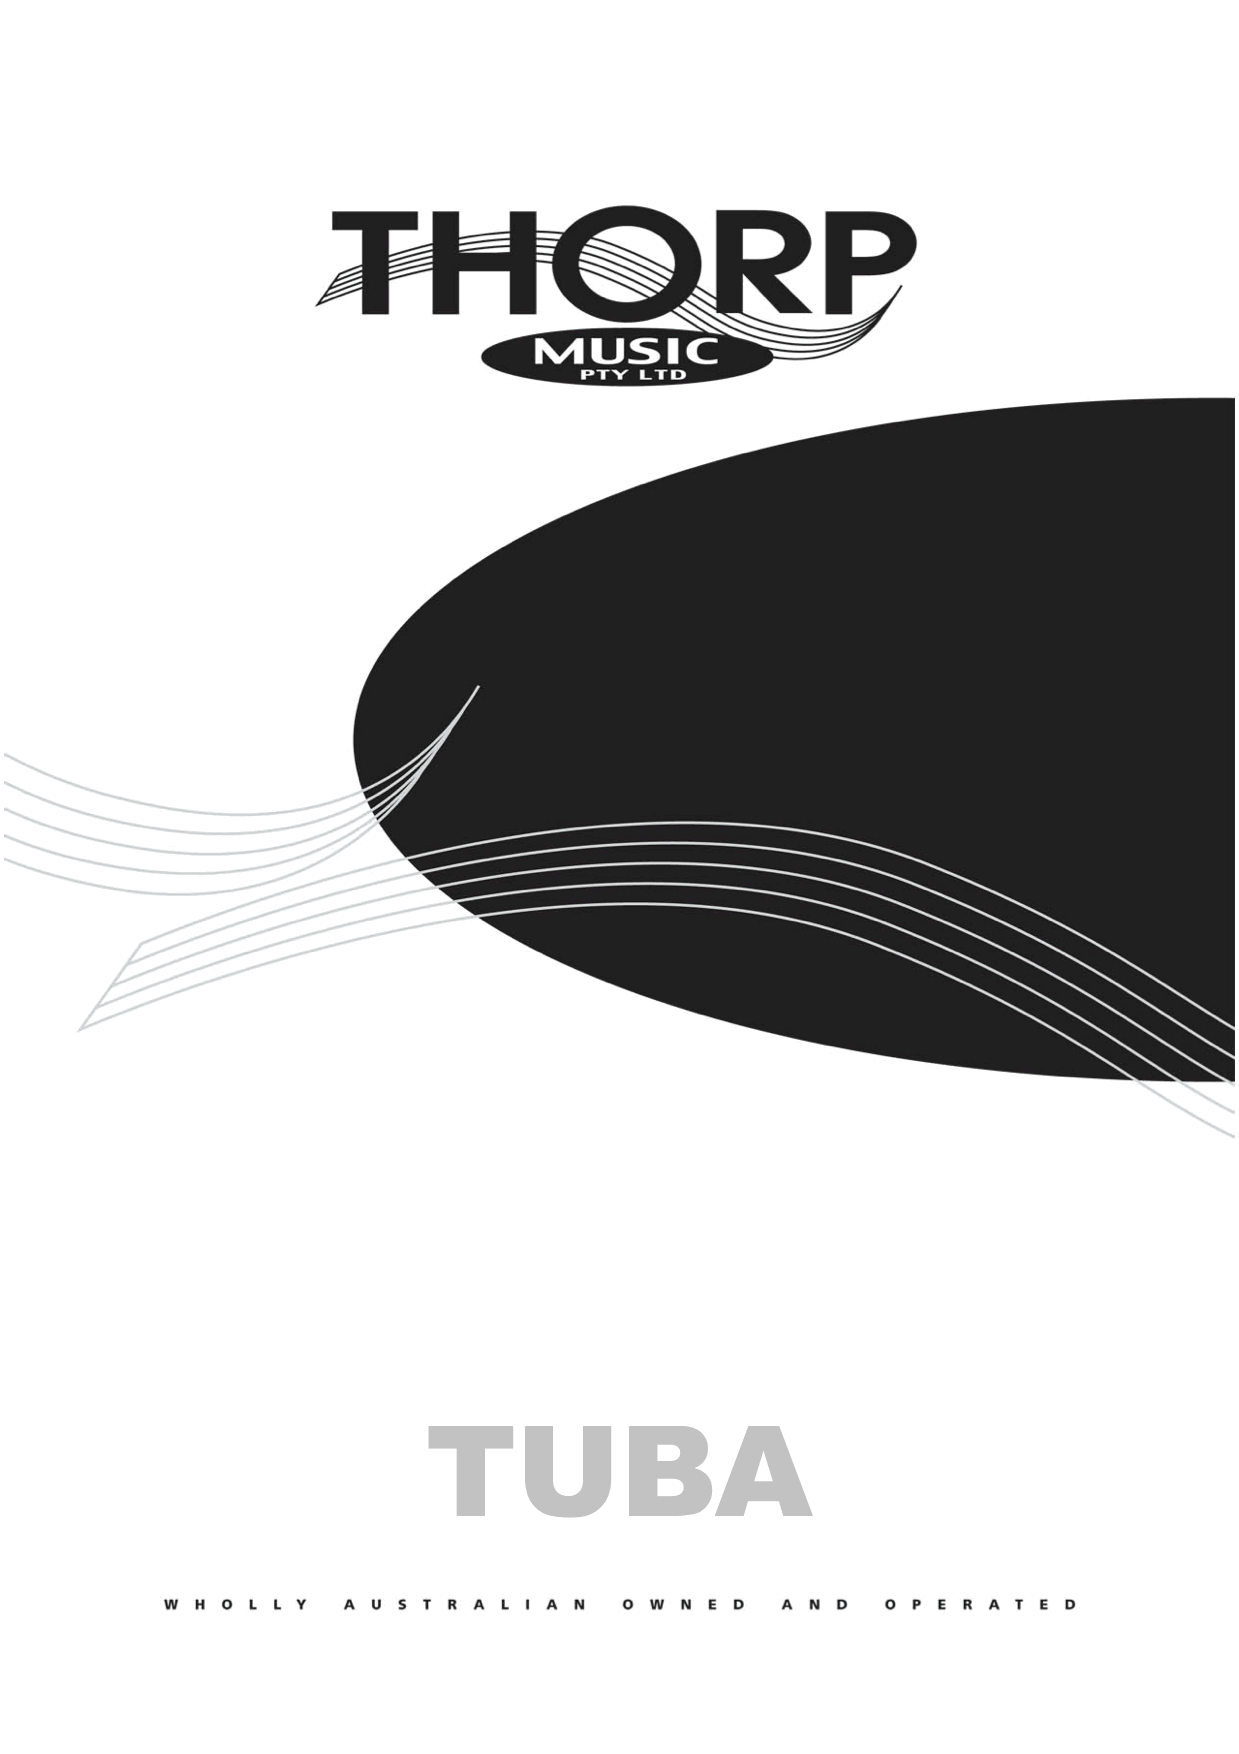 Tremendous Tunes for Tuba, Volume 1.